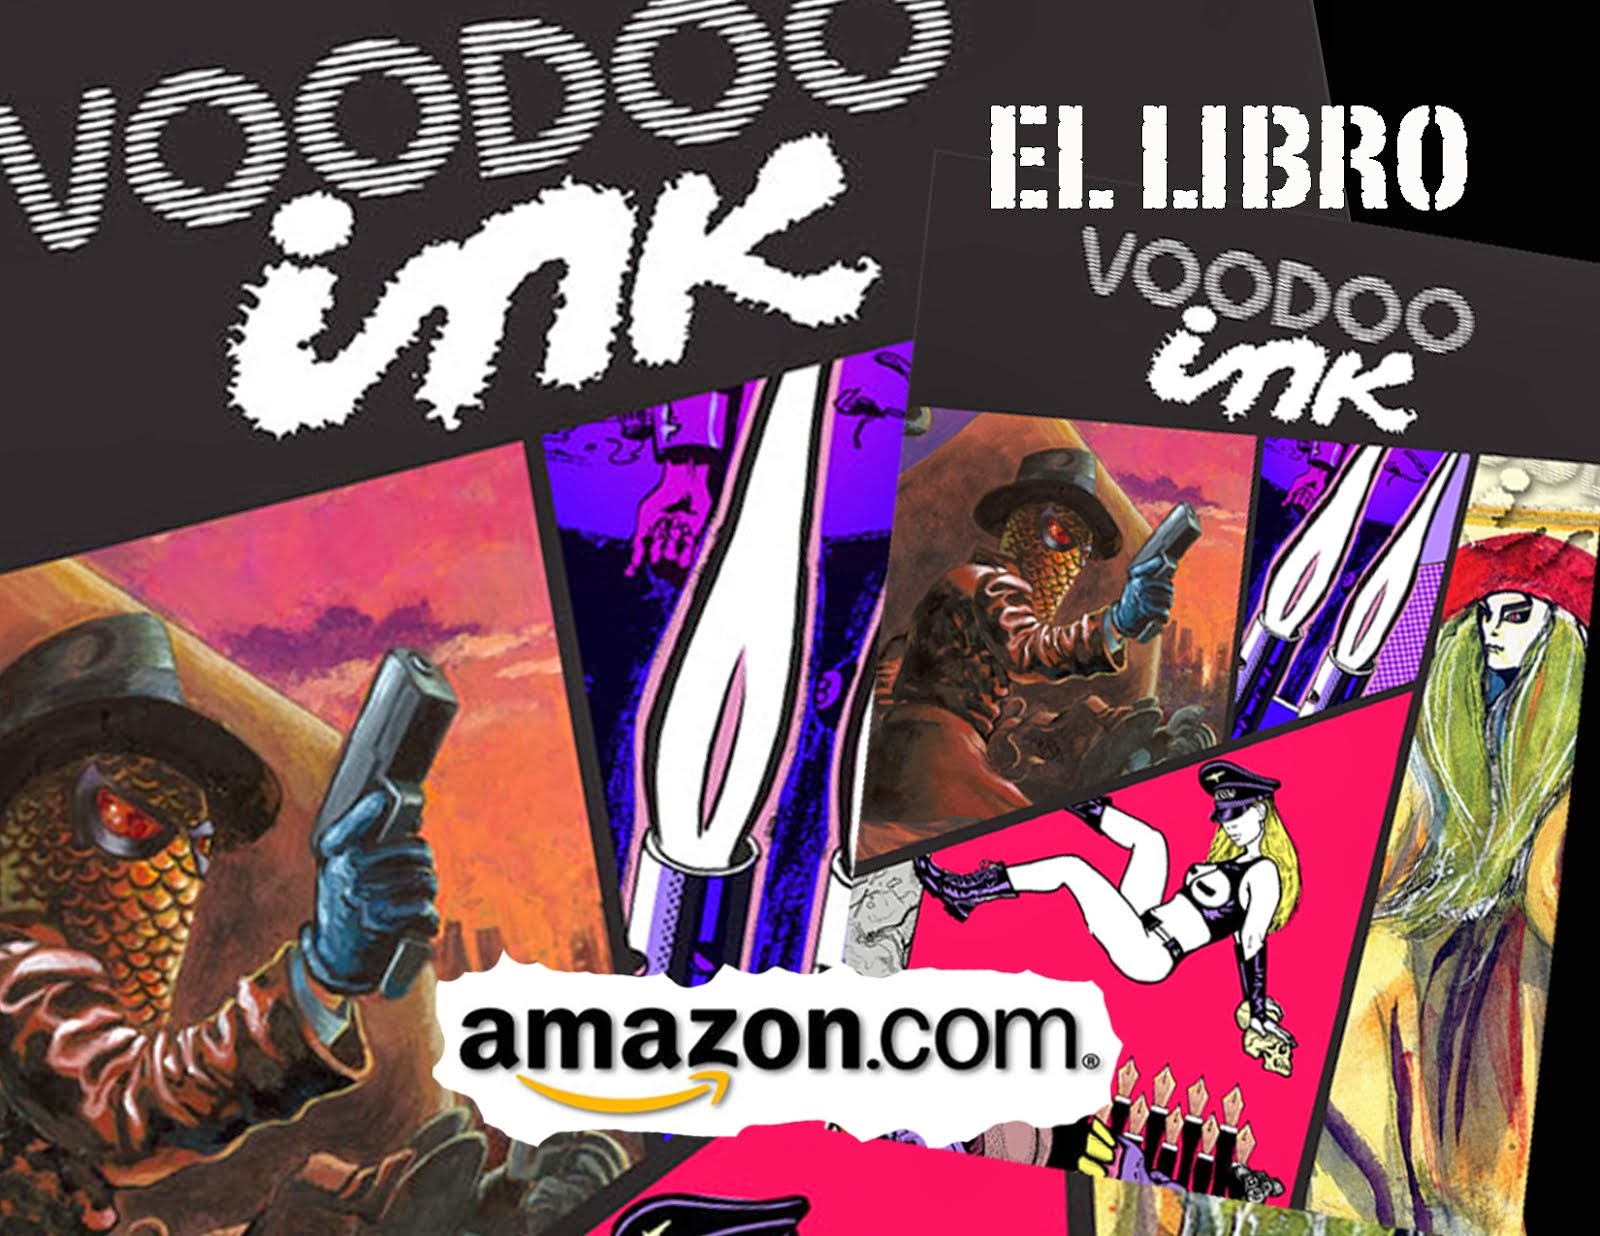 Voodoo ink on Amazon